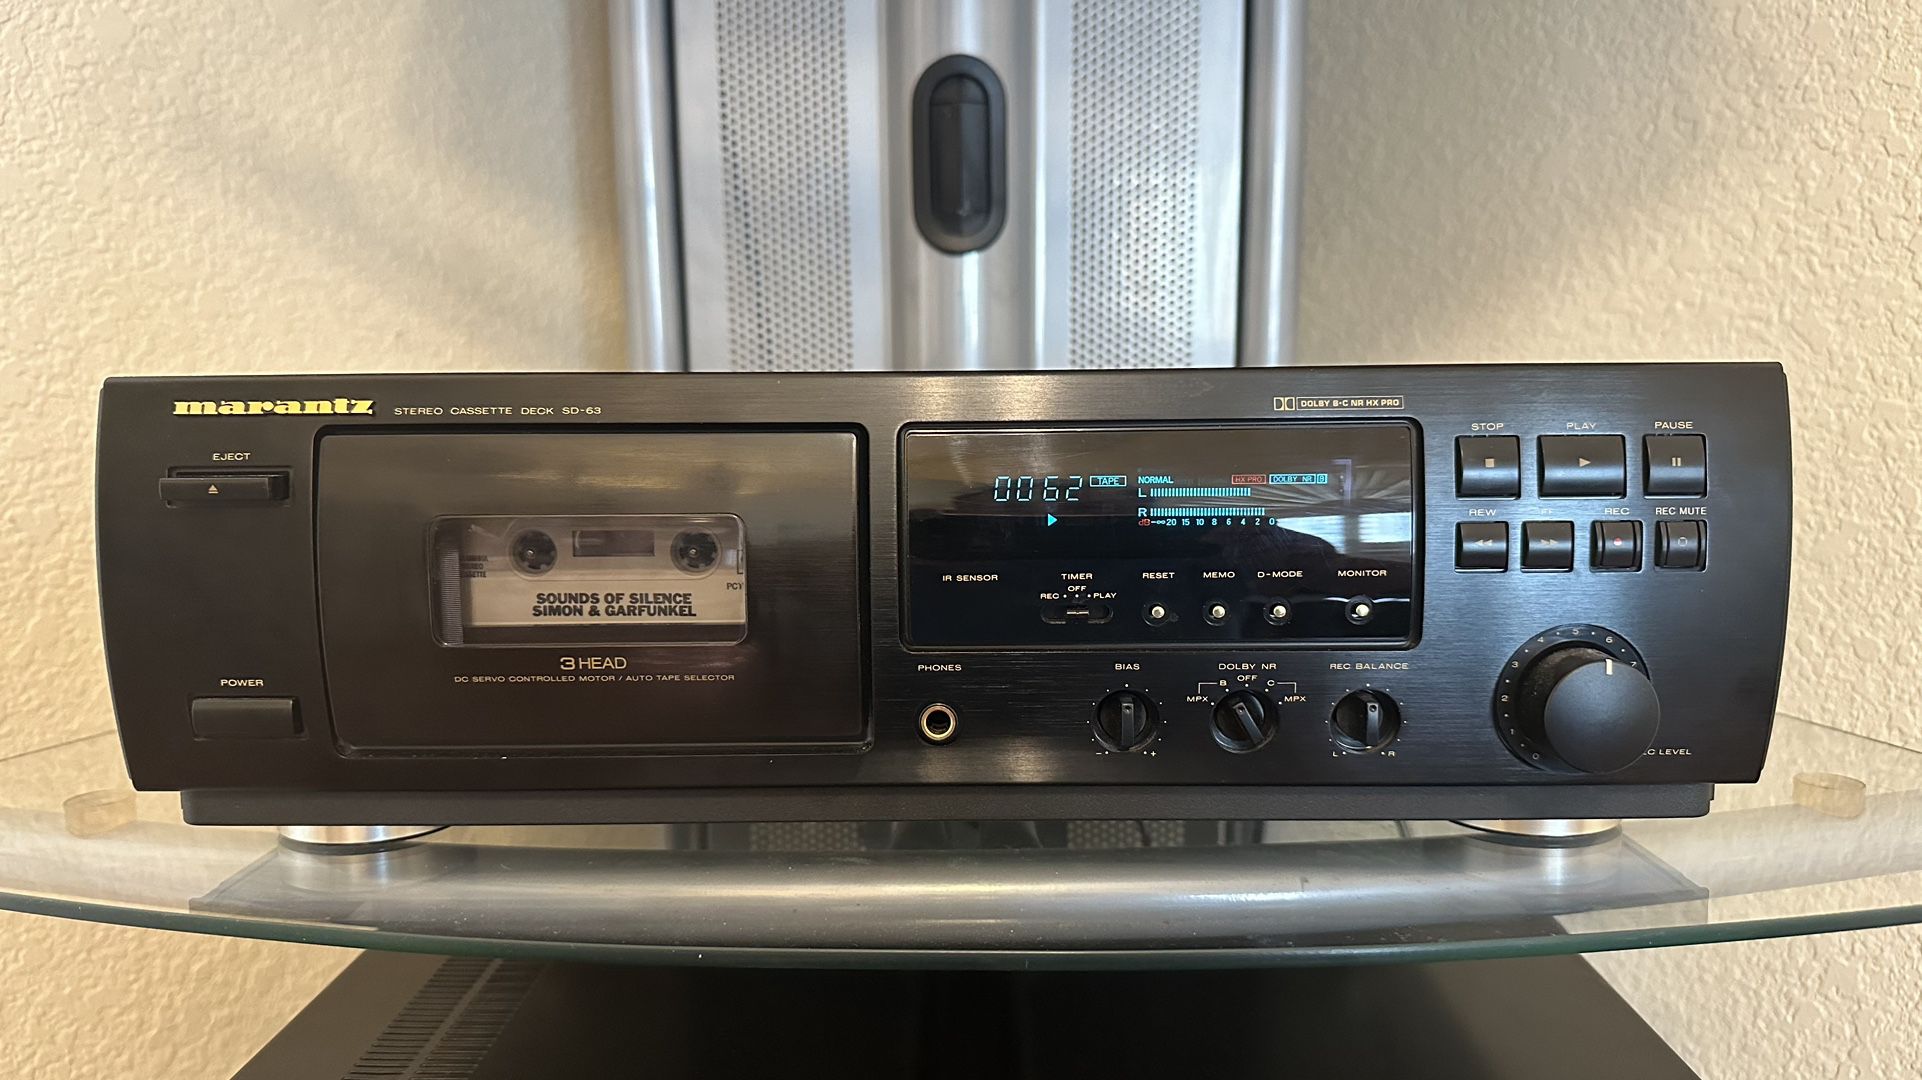 Marantz SD-63U Stereo Cassette Deck